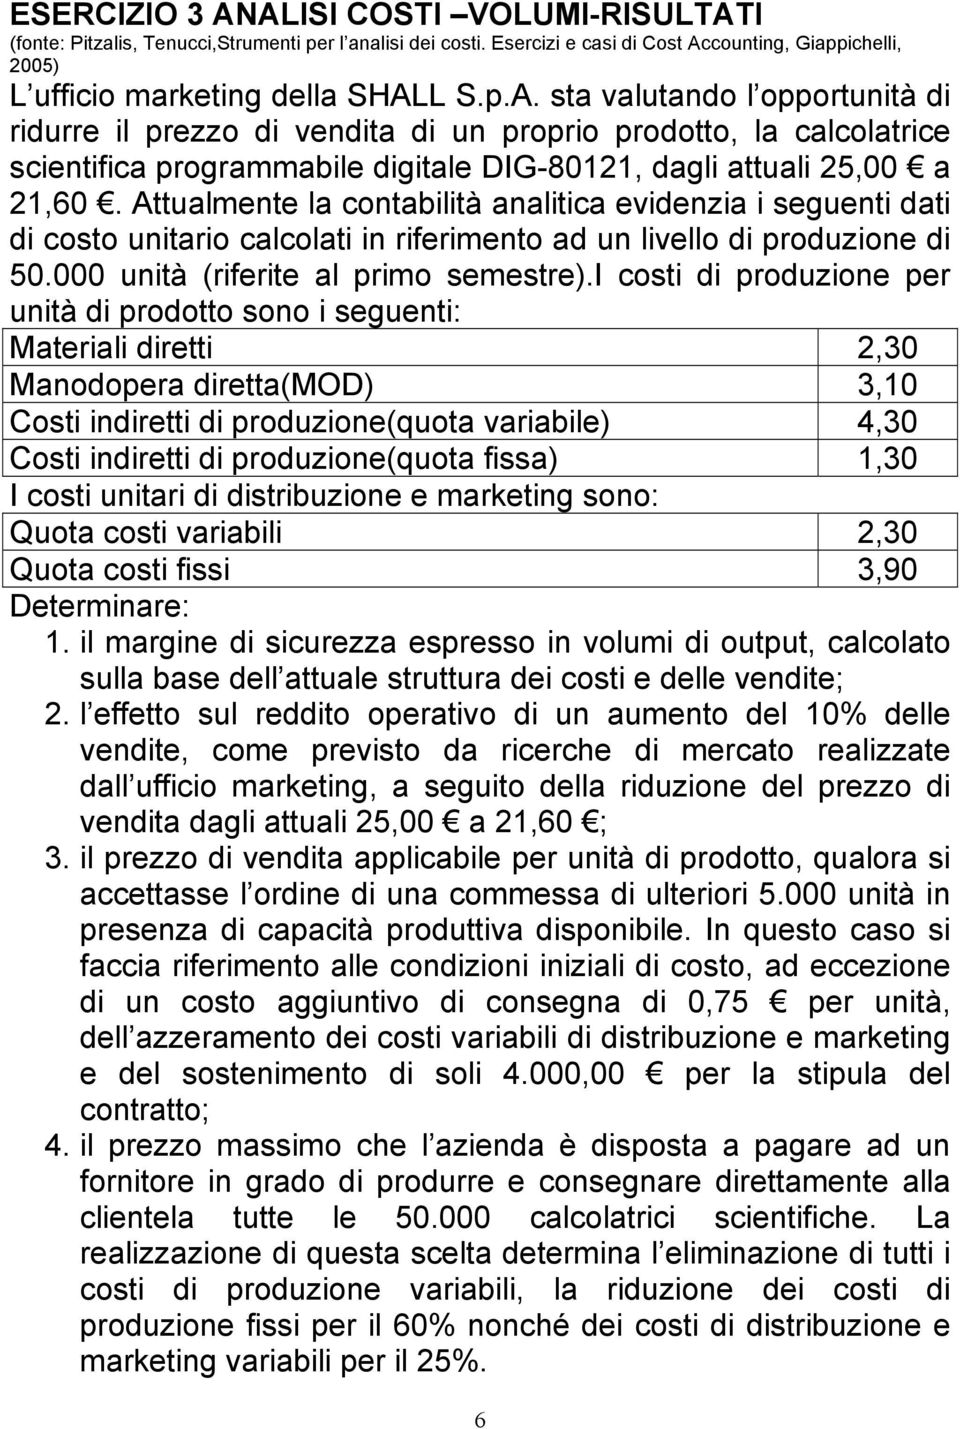 i costi di produzione per unità di prodotto sono i seguenti: Materiali diretti 2,30 Manodopera diretta(mod) 3,10 Costi indiretti di produzione(quota variabile) 4,30 Costi indiretti di